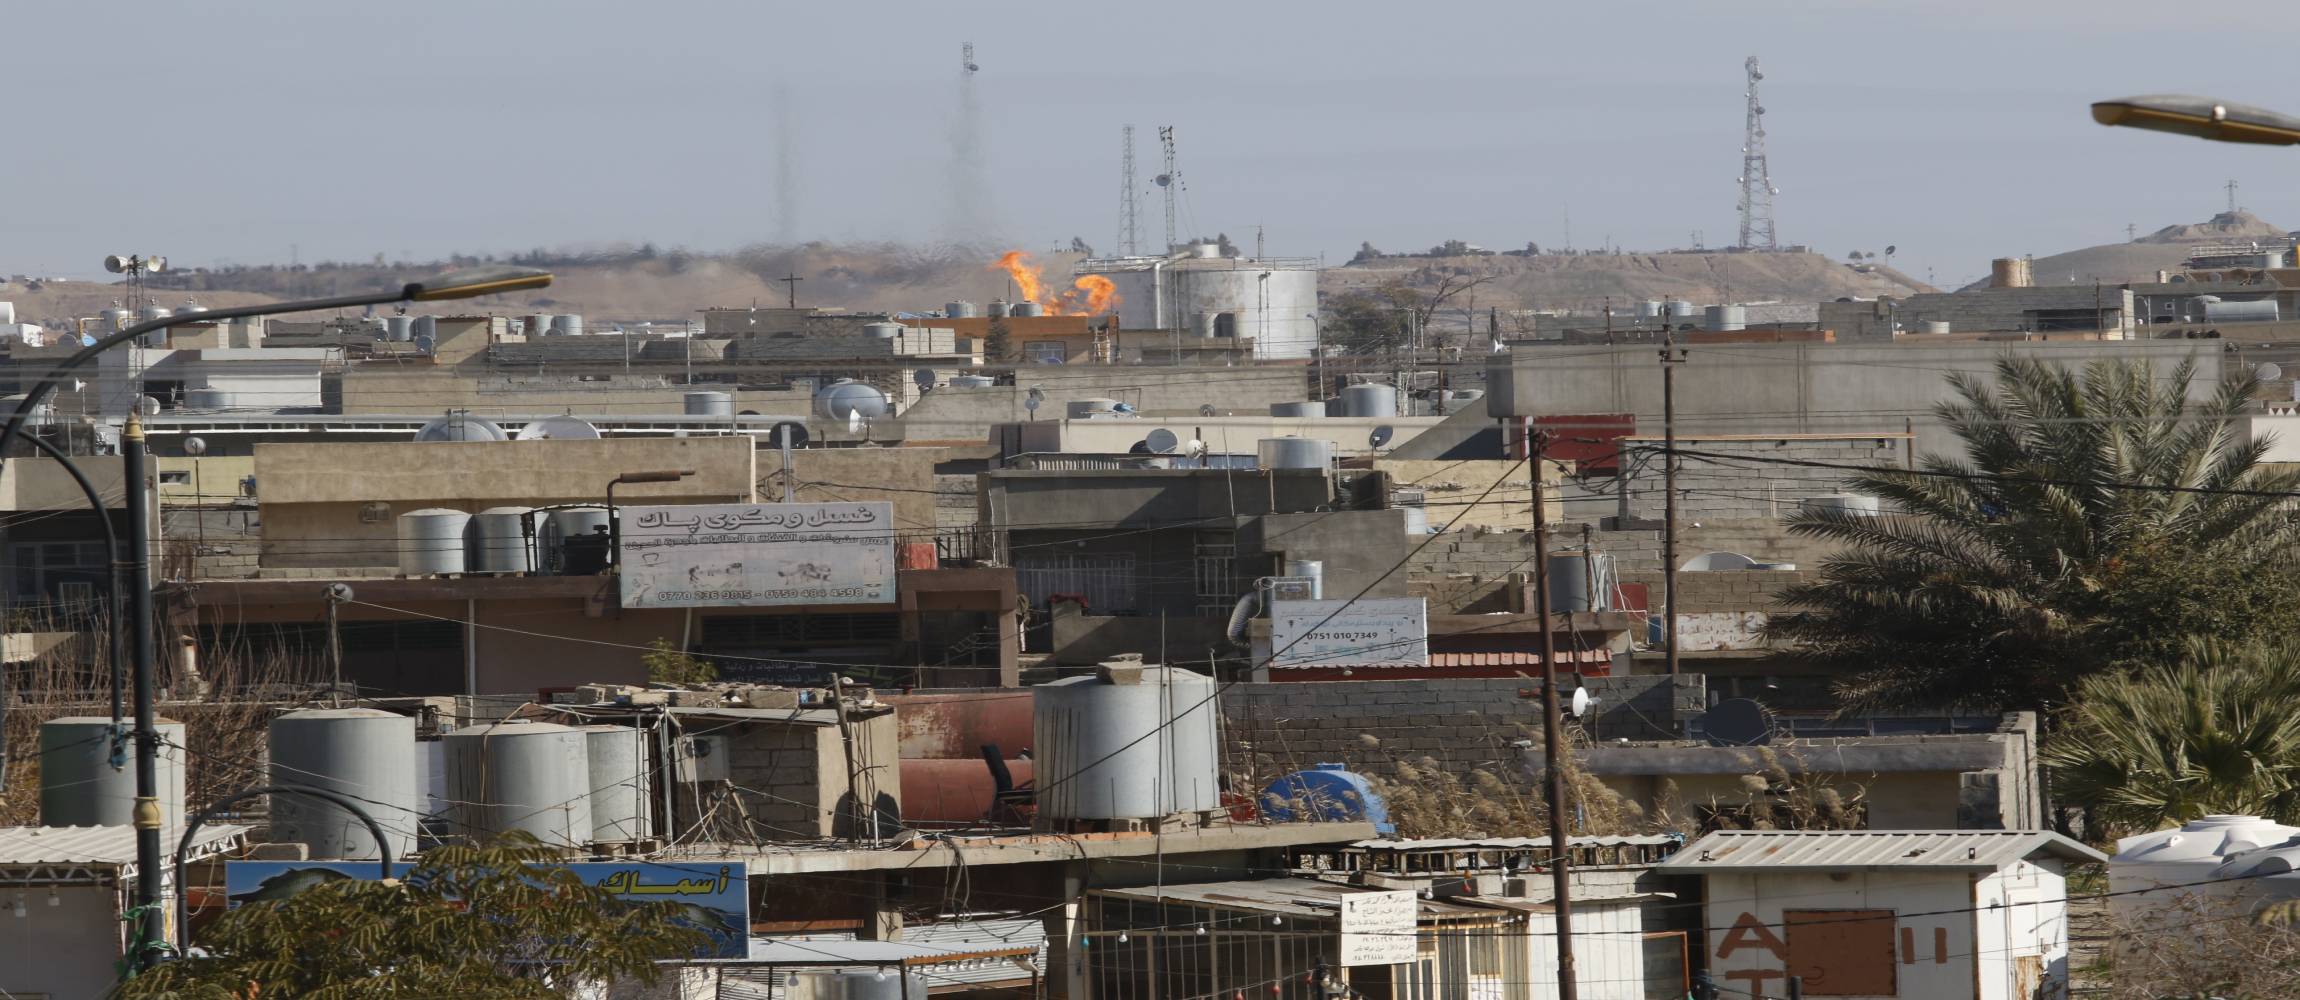 Dargestellt ist ein Wohnviertel in Kirkuk und das Feuer, das durch die Verbrennung von Erdgas entsteht.